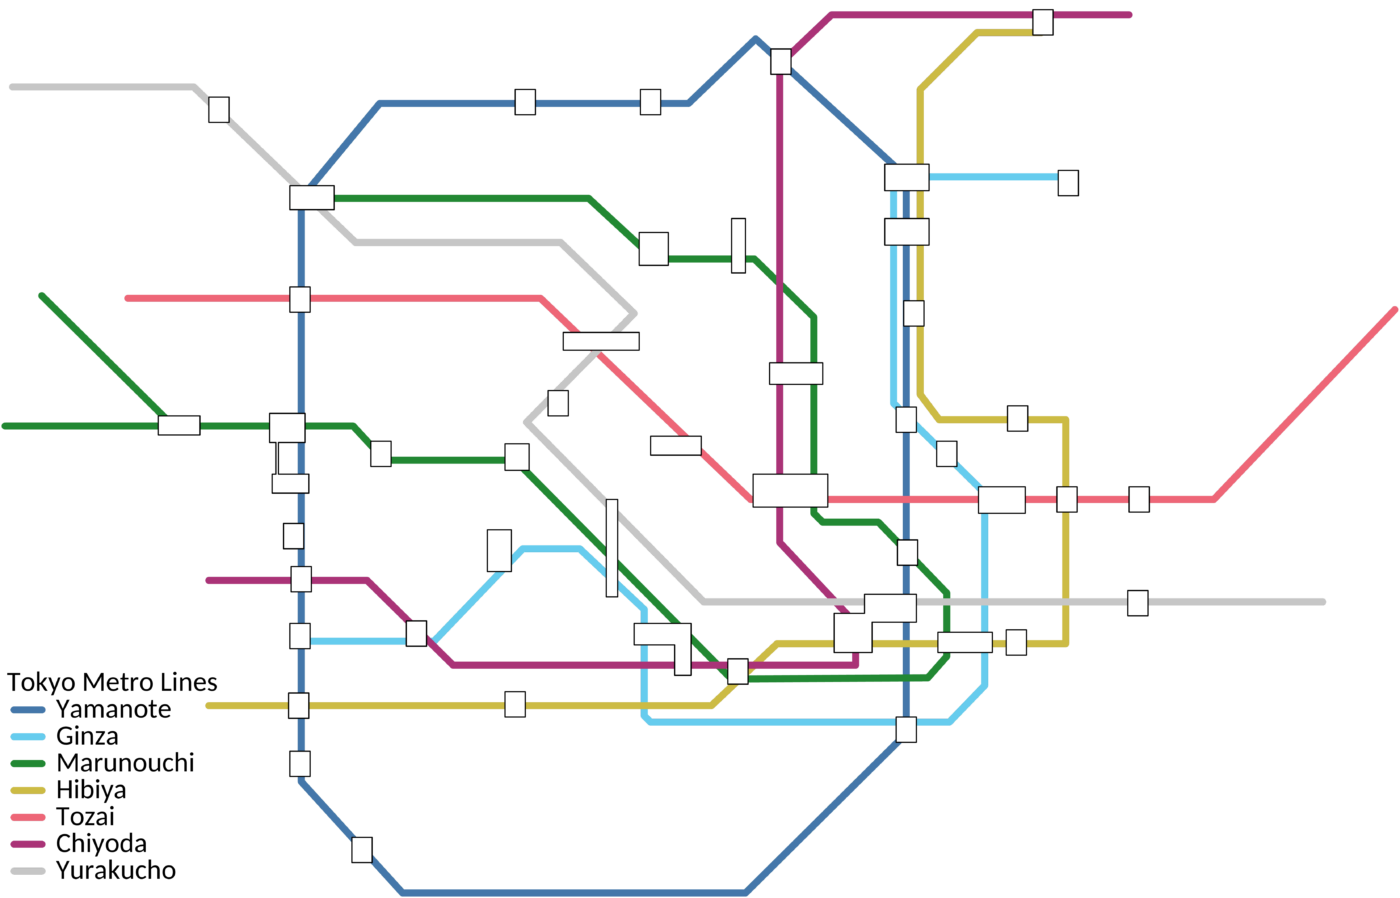 Tokyo metro in bright scheme